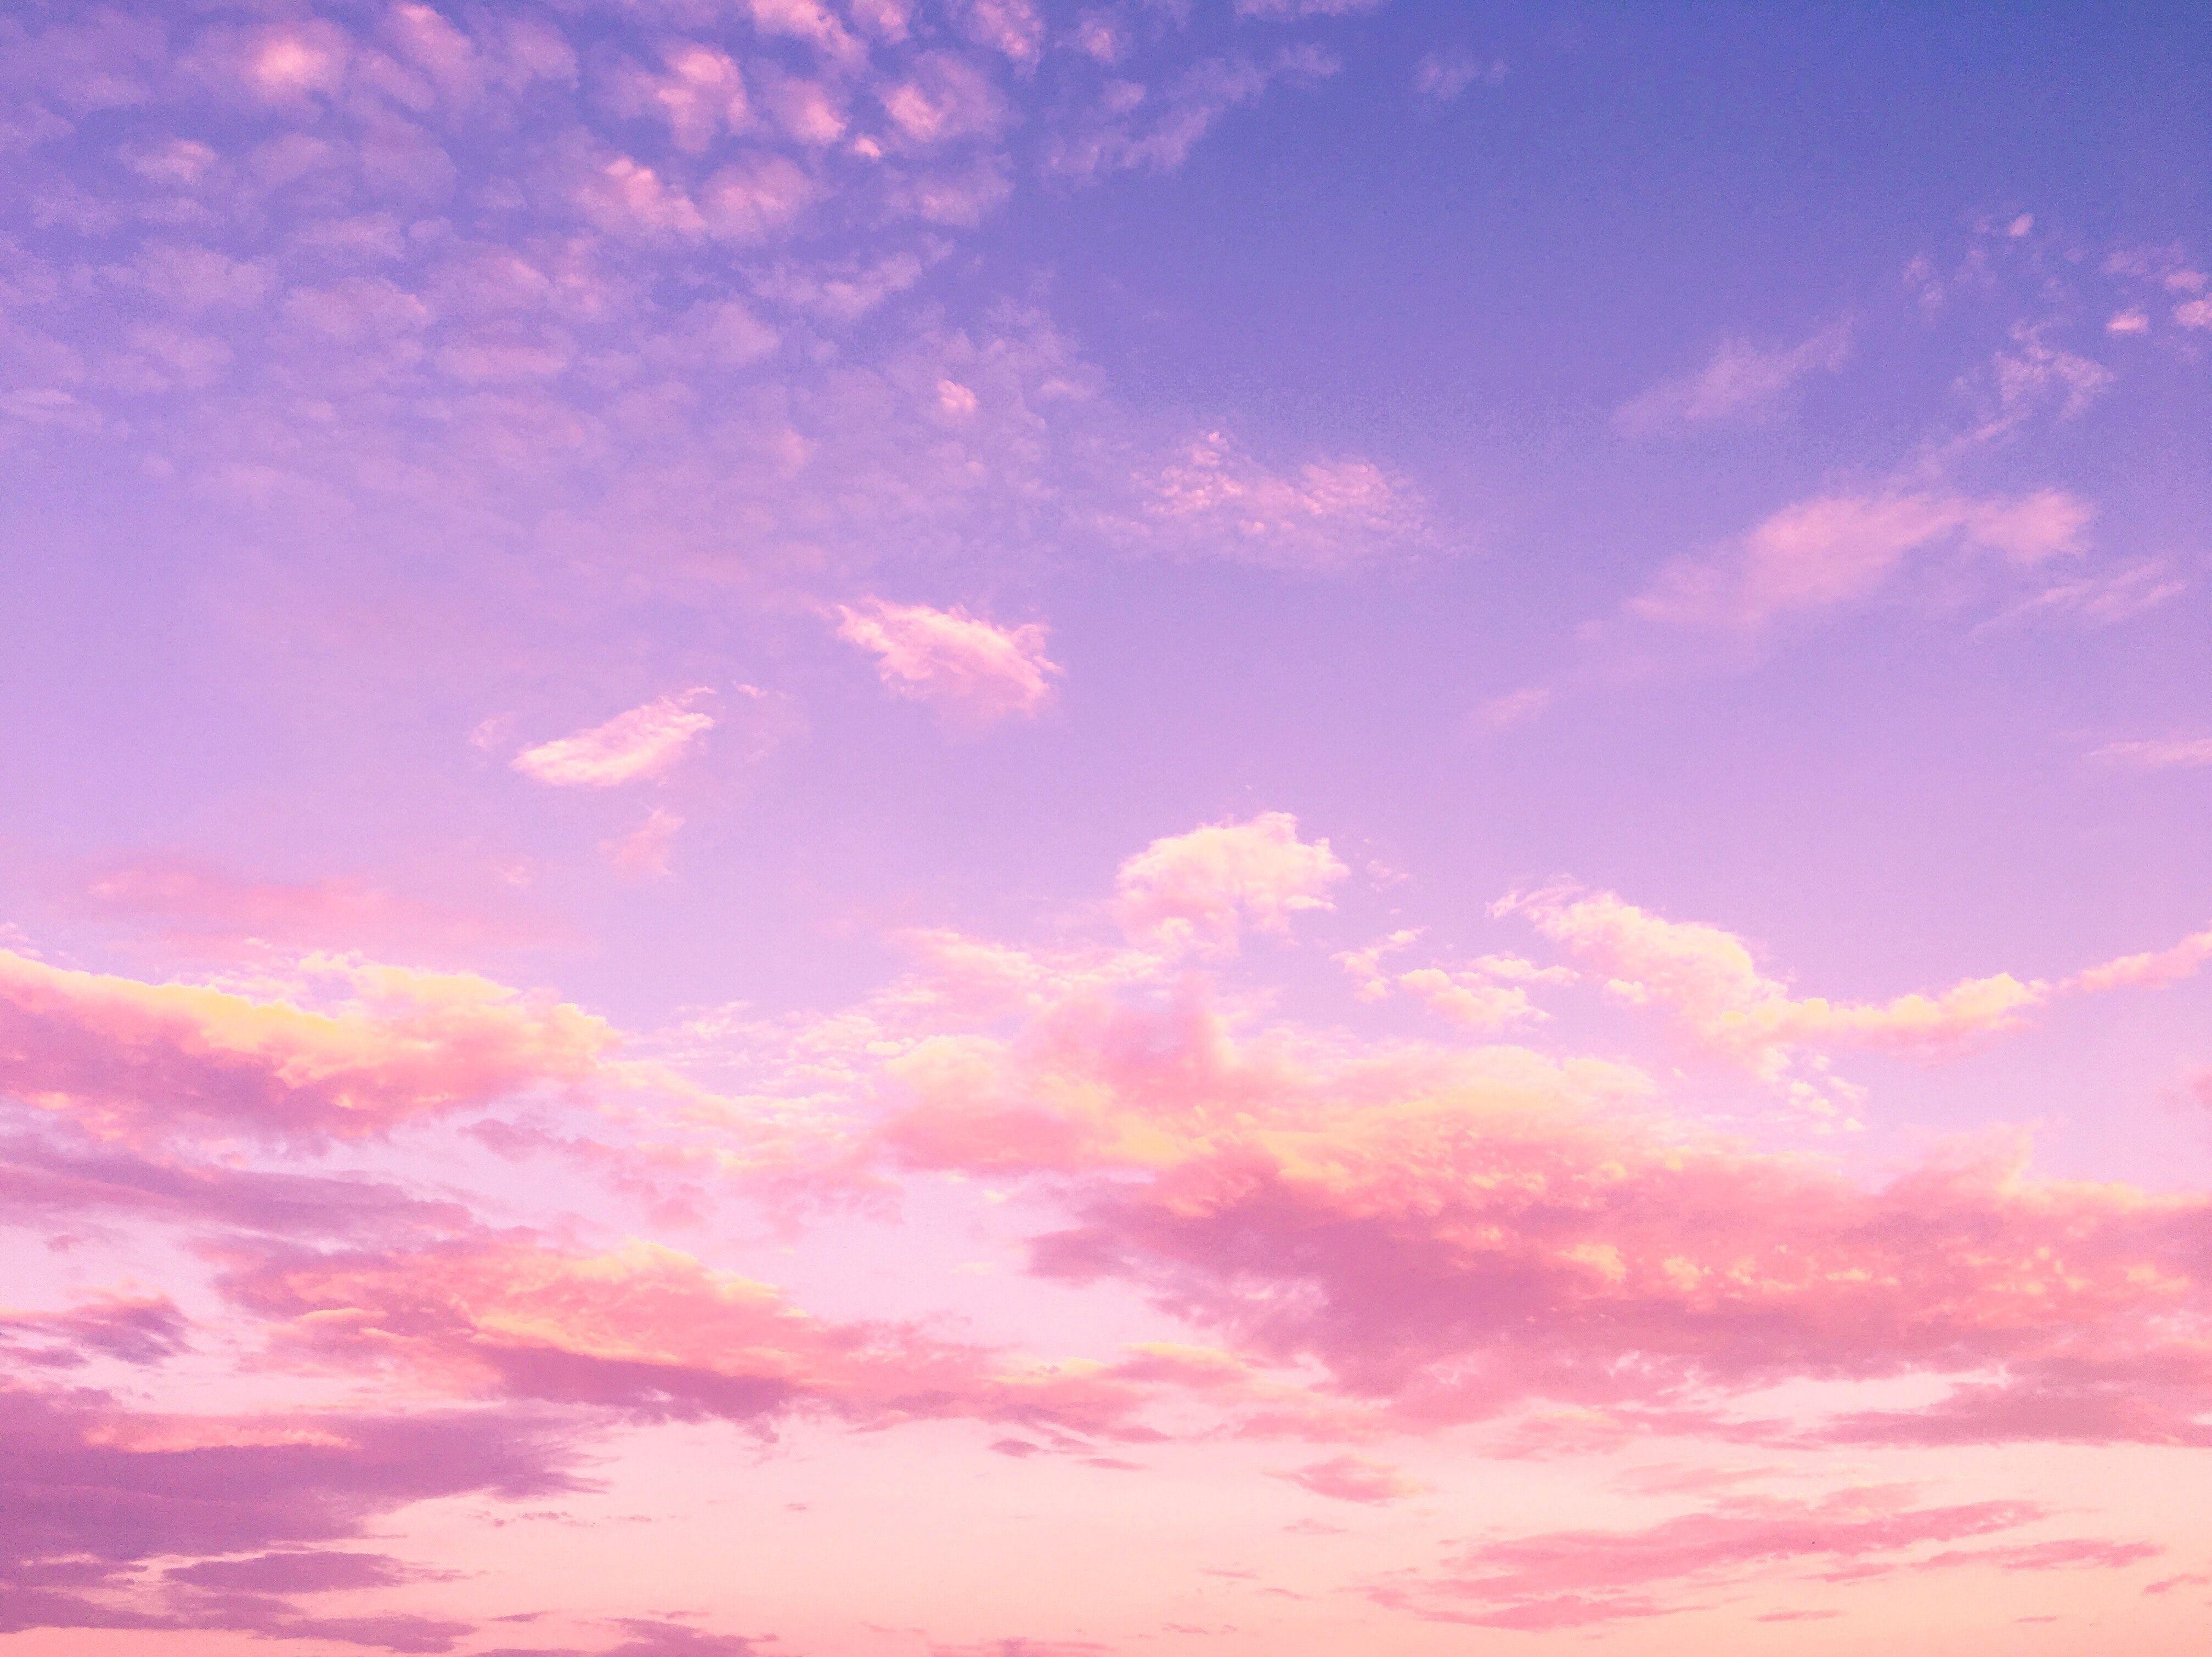 Có bao giờ bạn muốn thay đổi hình nền máy tính hay điện thoại của mình thành một bức tranh về bầu trời hồng và xanh tuyệt đẹp? Với những hình nền đẹp miễn phí này, bạn sẽ có thể cảm nhận được sự thanh bình và hy vọng từ các tông màu trên bầu trời huyền ảo này.